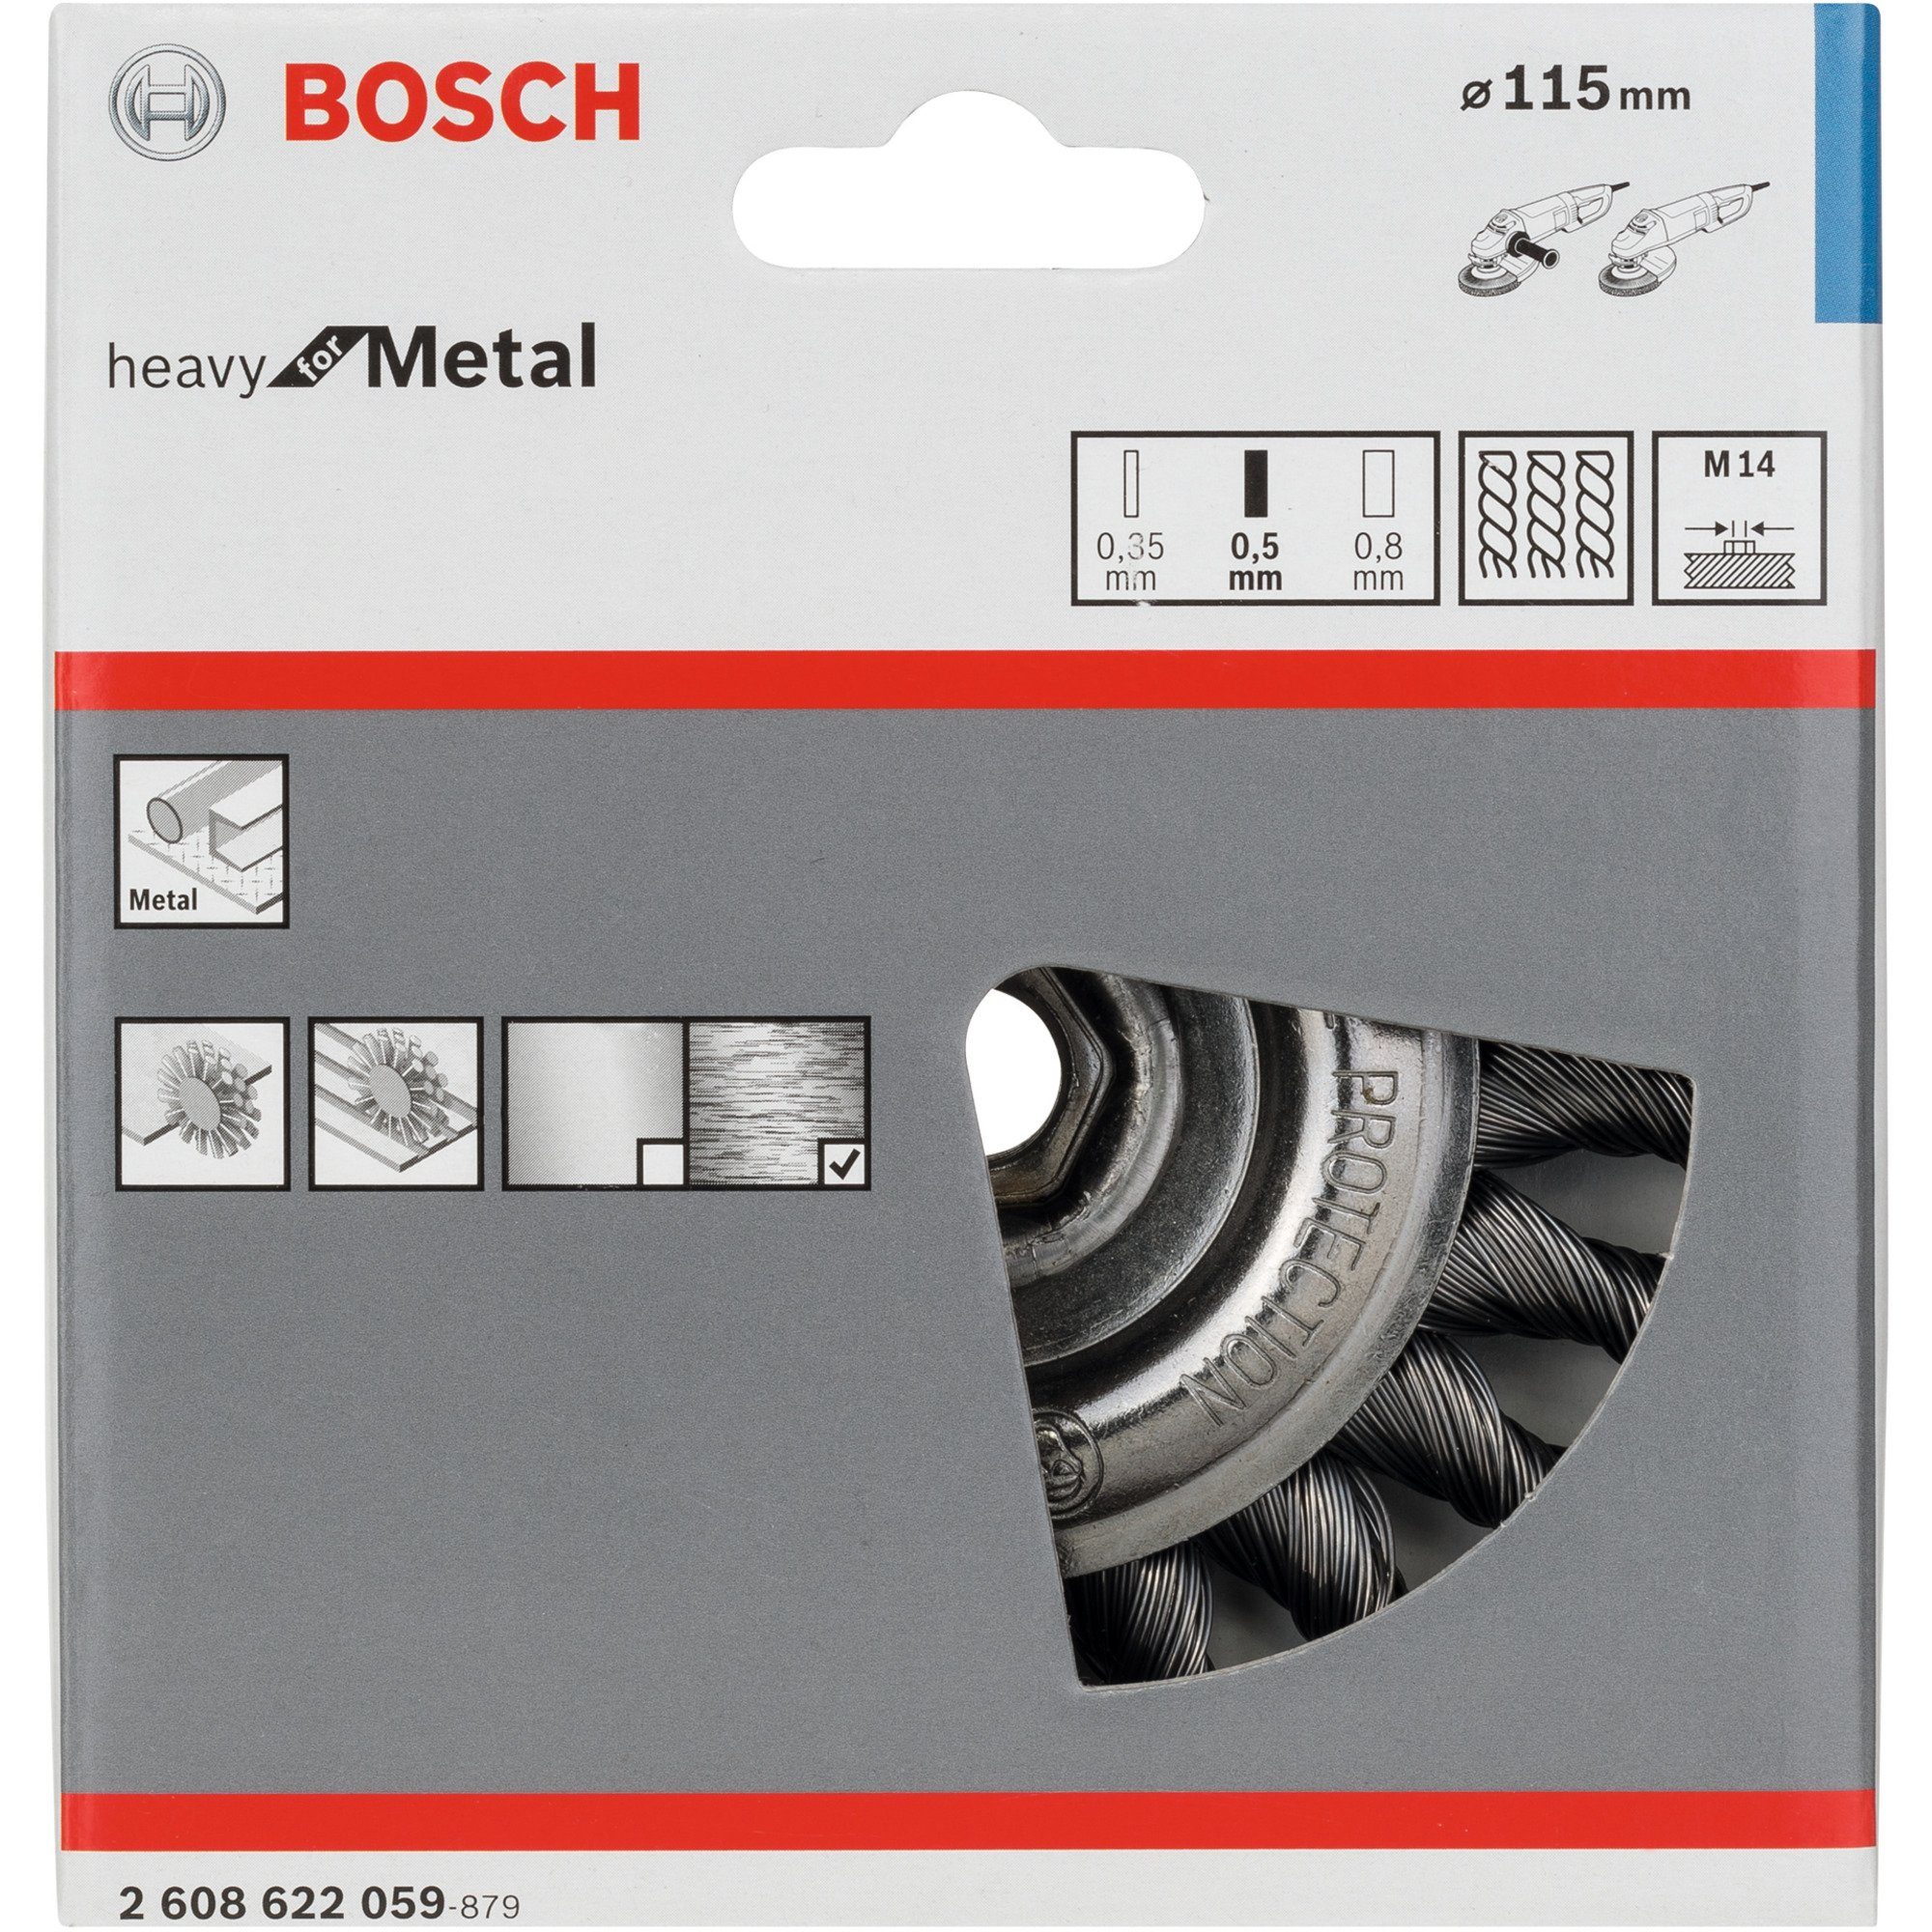 Scheibenbürste BOSCH Bosch Metal for Schleifscheibe Heavy Professional